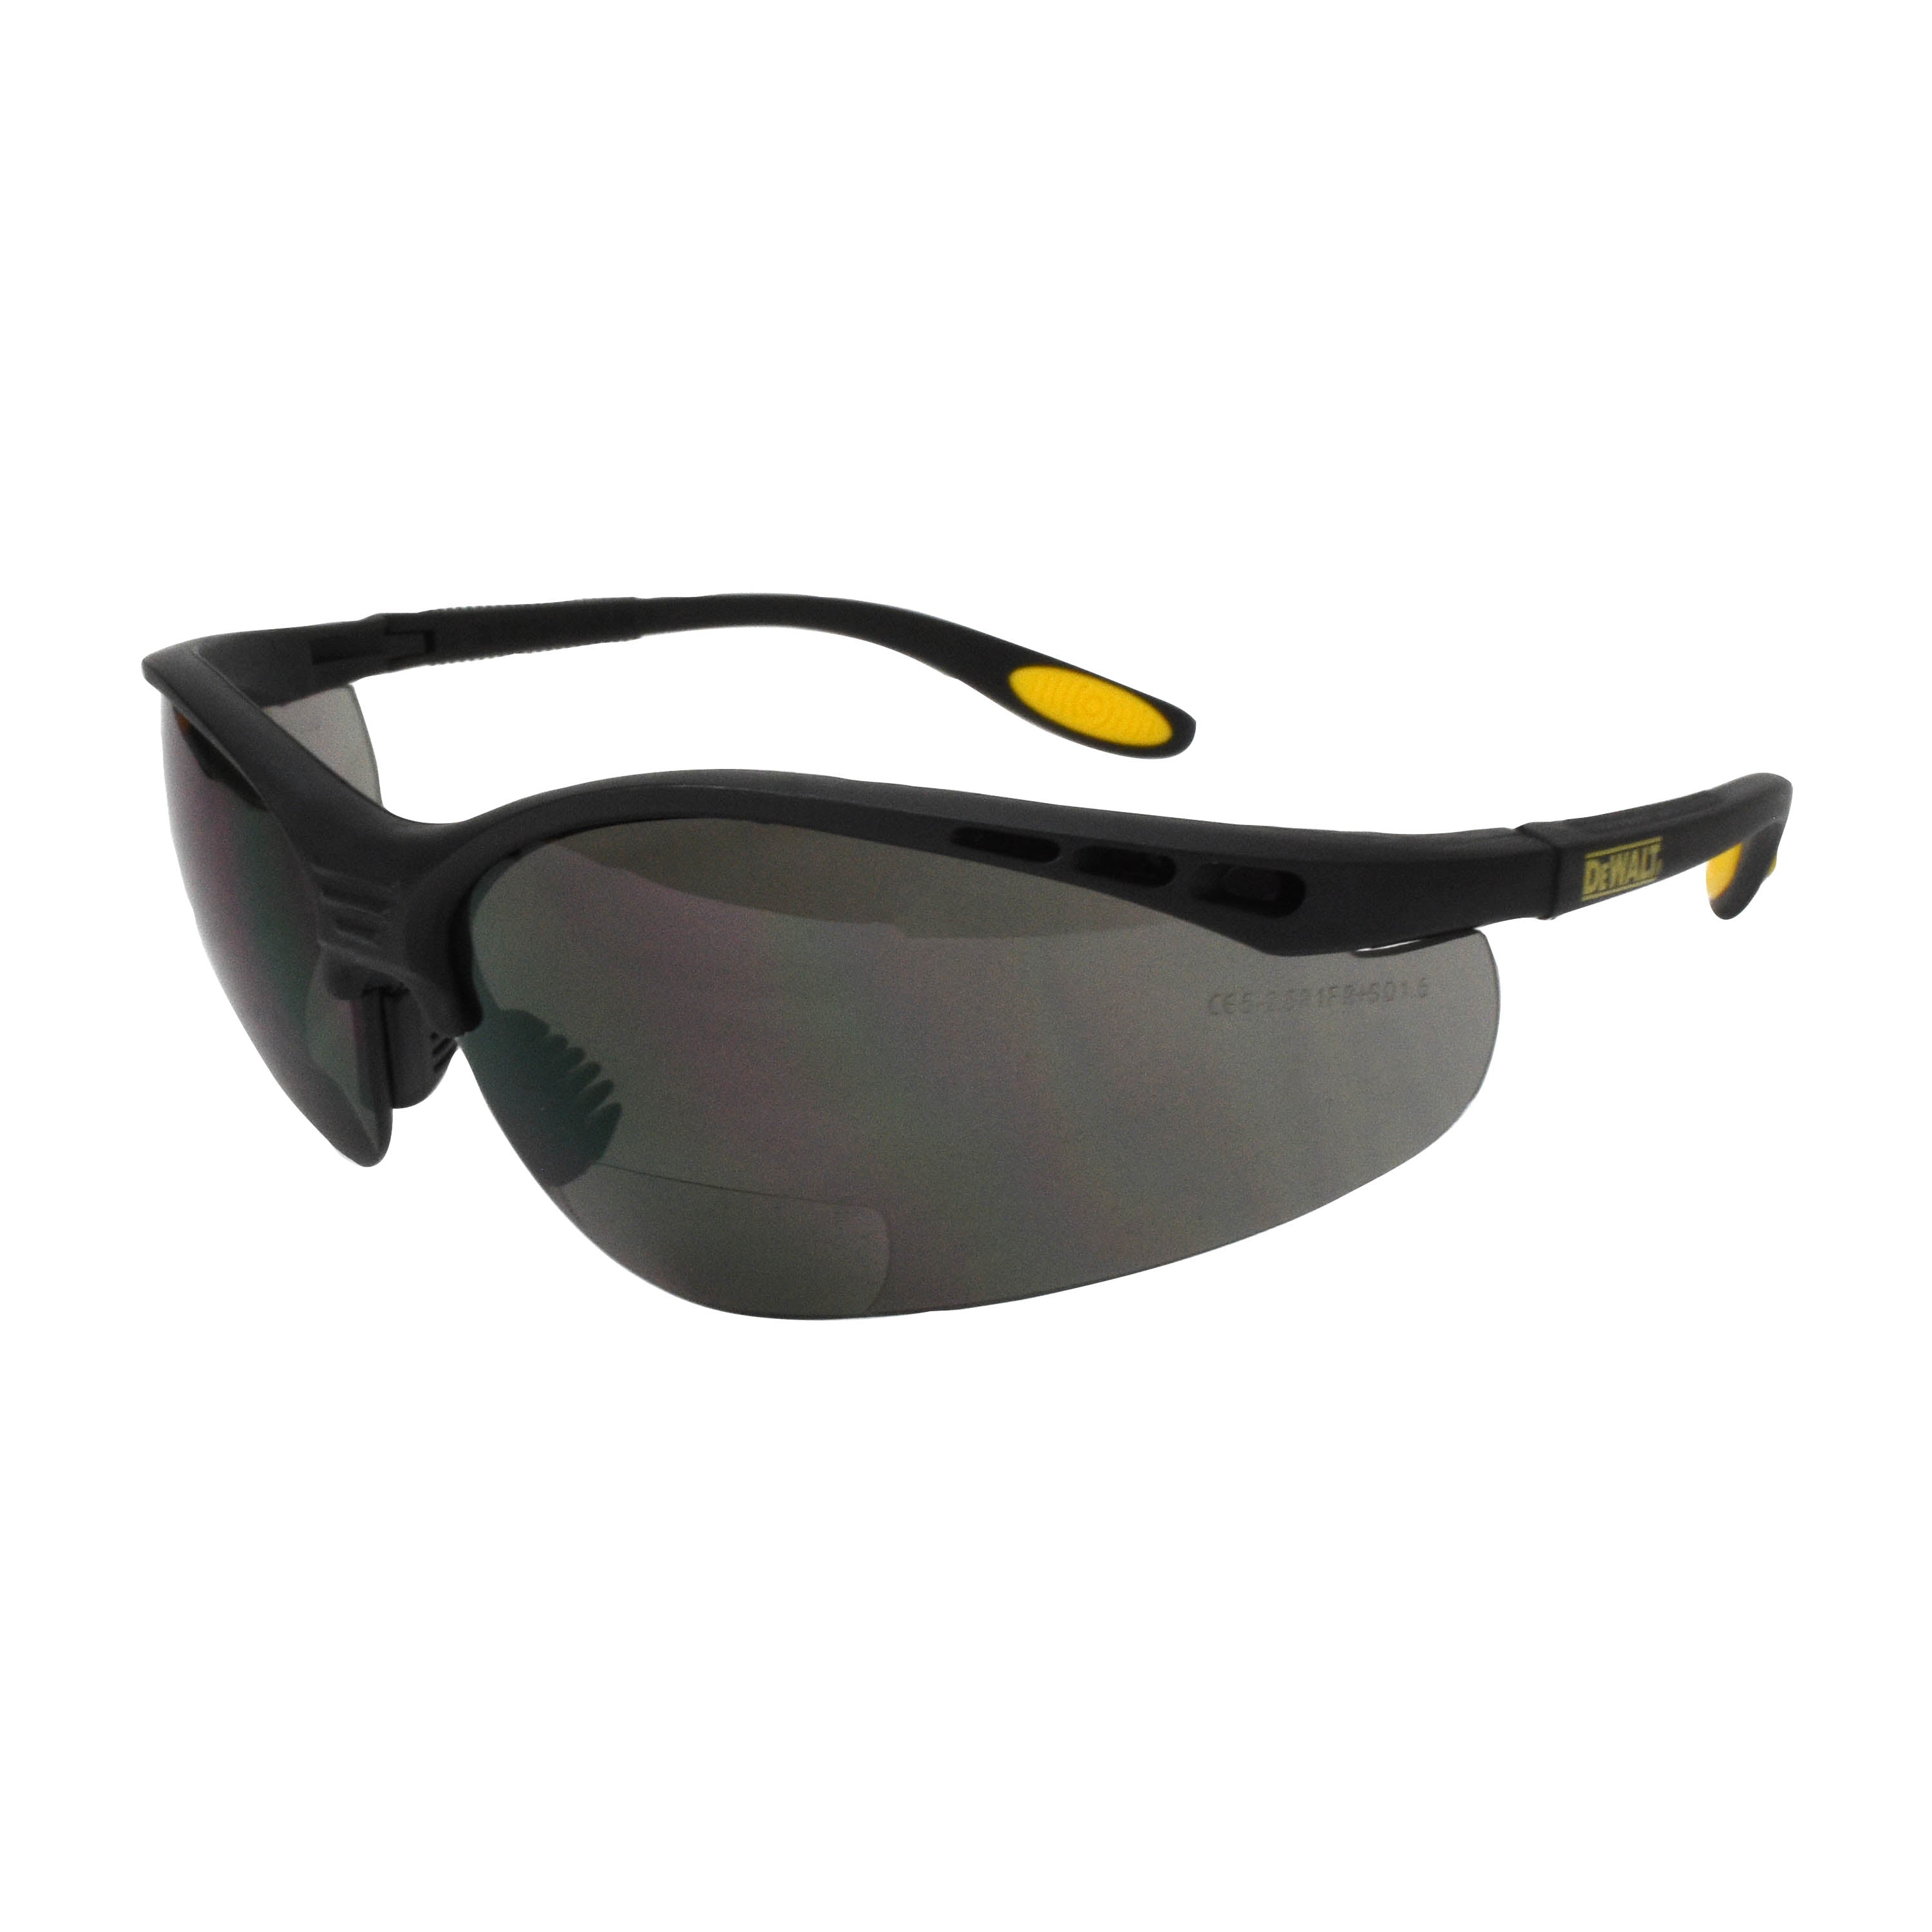 DeWALT Reinforcer Bi-Focal Glasses (Box of 12) - Smoke 1.5 Diopter Black Frame With Protective Sleeve